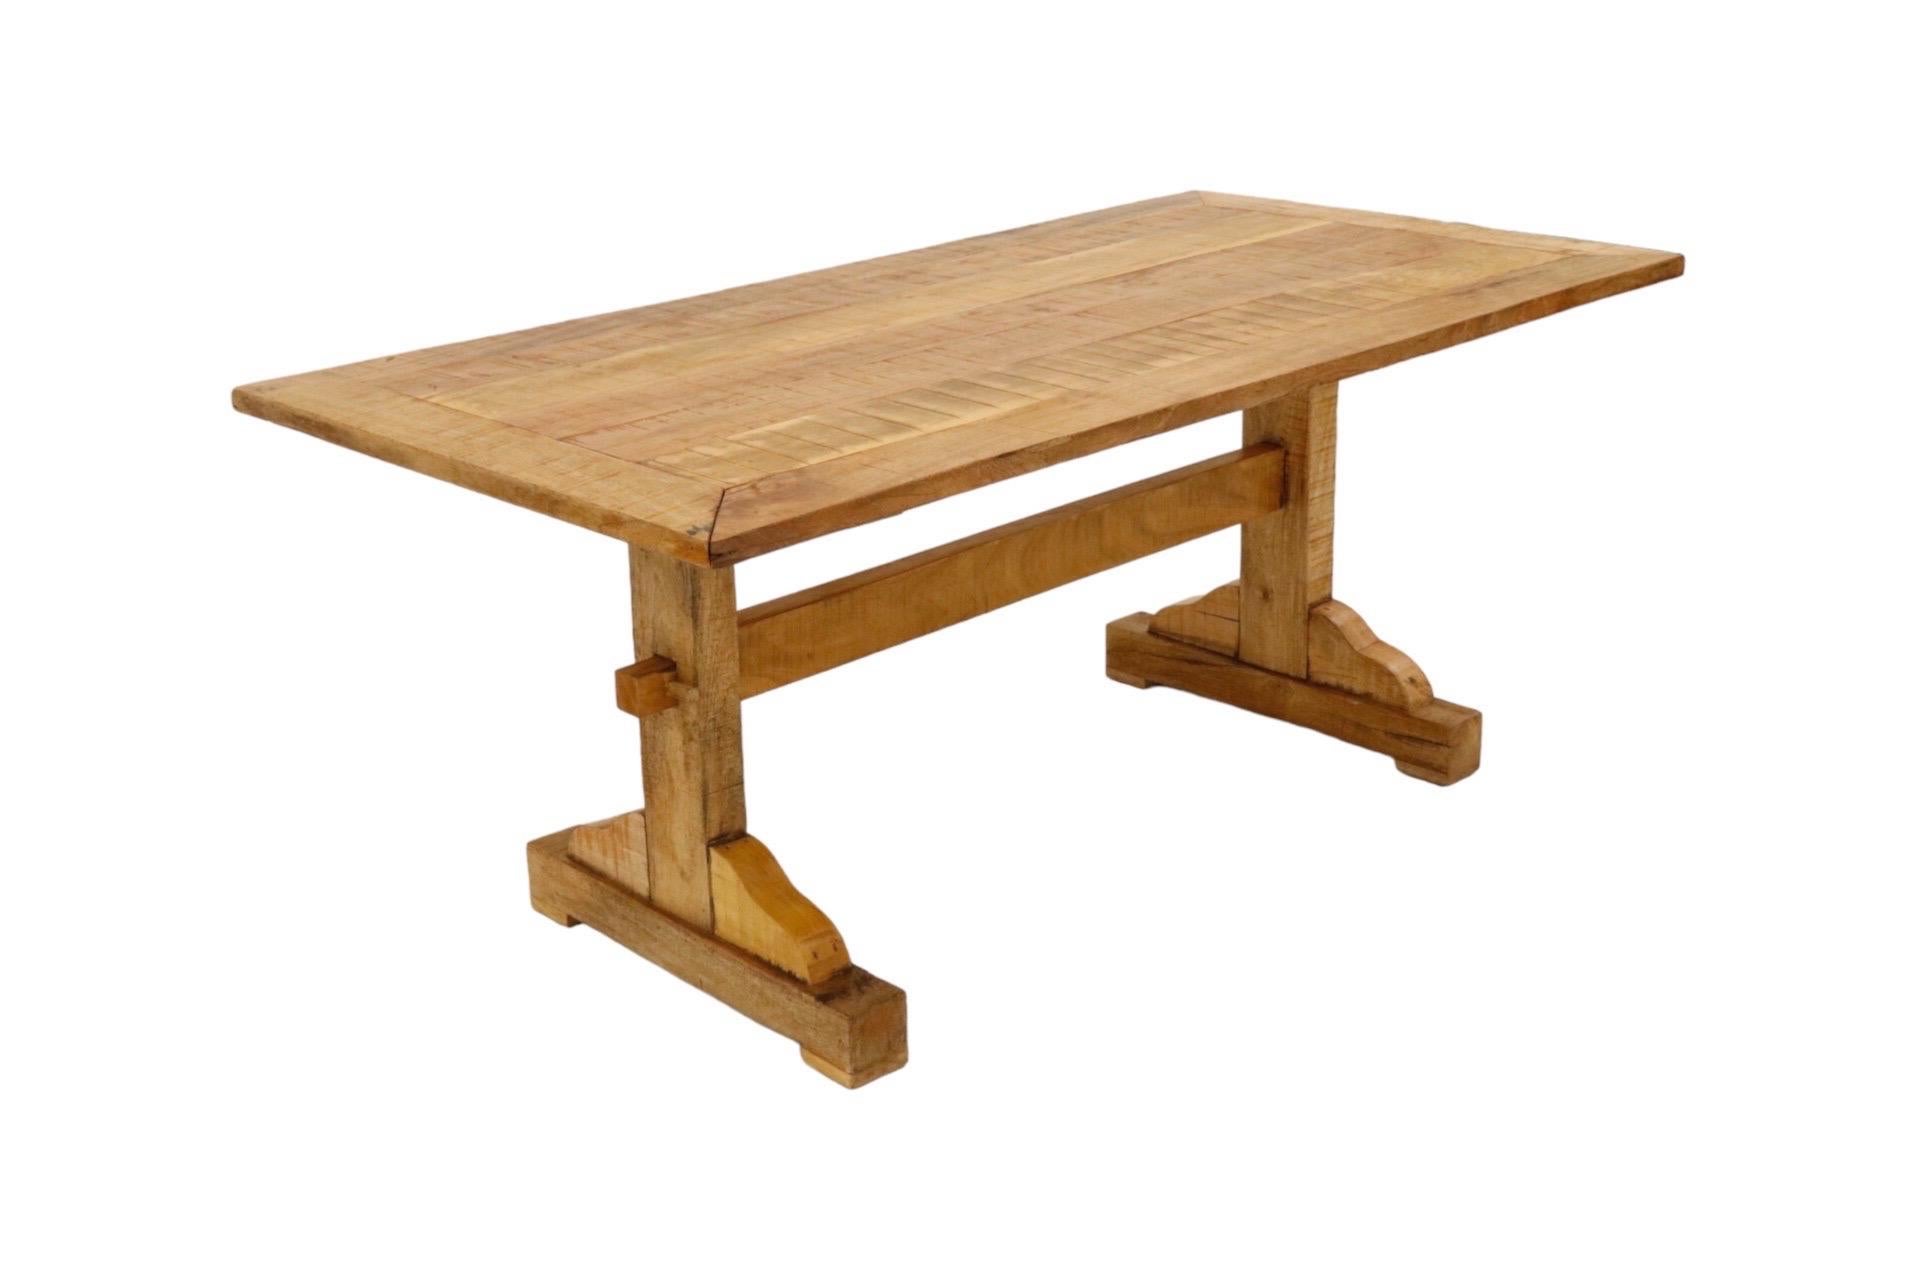 Ein Esstisch im Landhausstil aus Kiefernholz. Die Tischplatte besteht aus Holzplanken, die von einer breiten Bordüre umrahmt werden. Das Gestell besteht aus zwei Beinen, die von einem Streckbalken getragen werden, der an jeder Seite mit Pflöcken